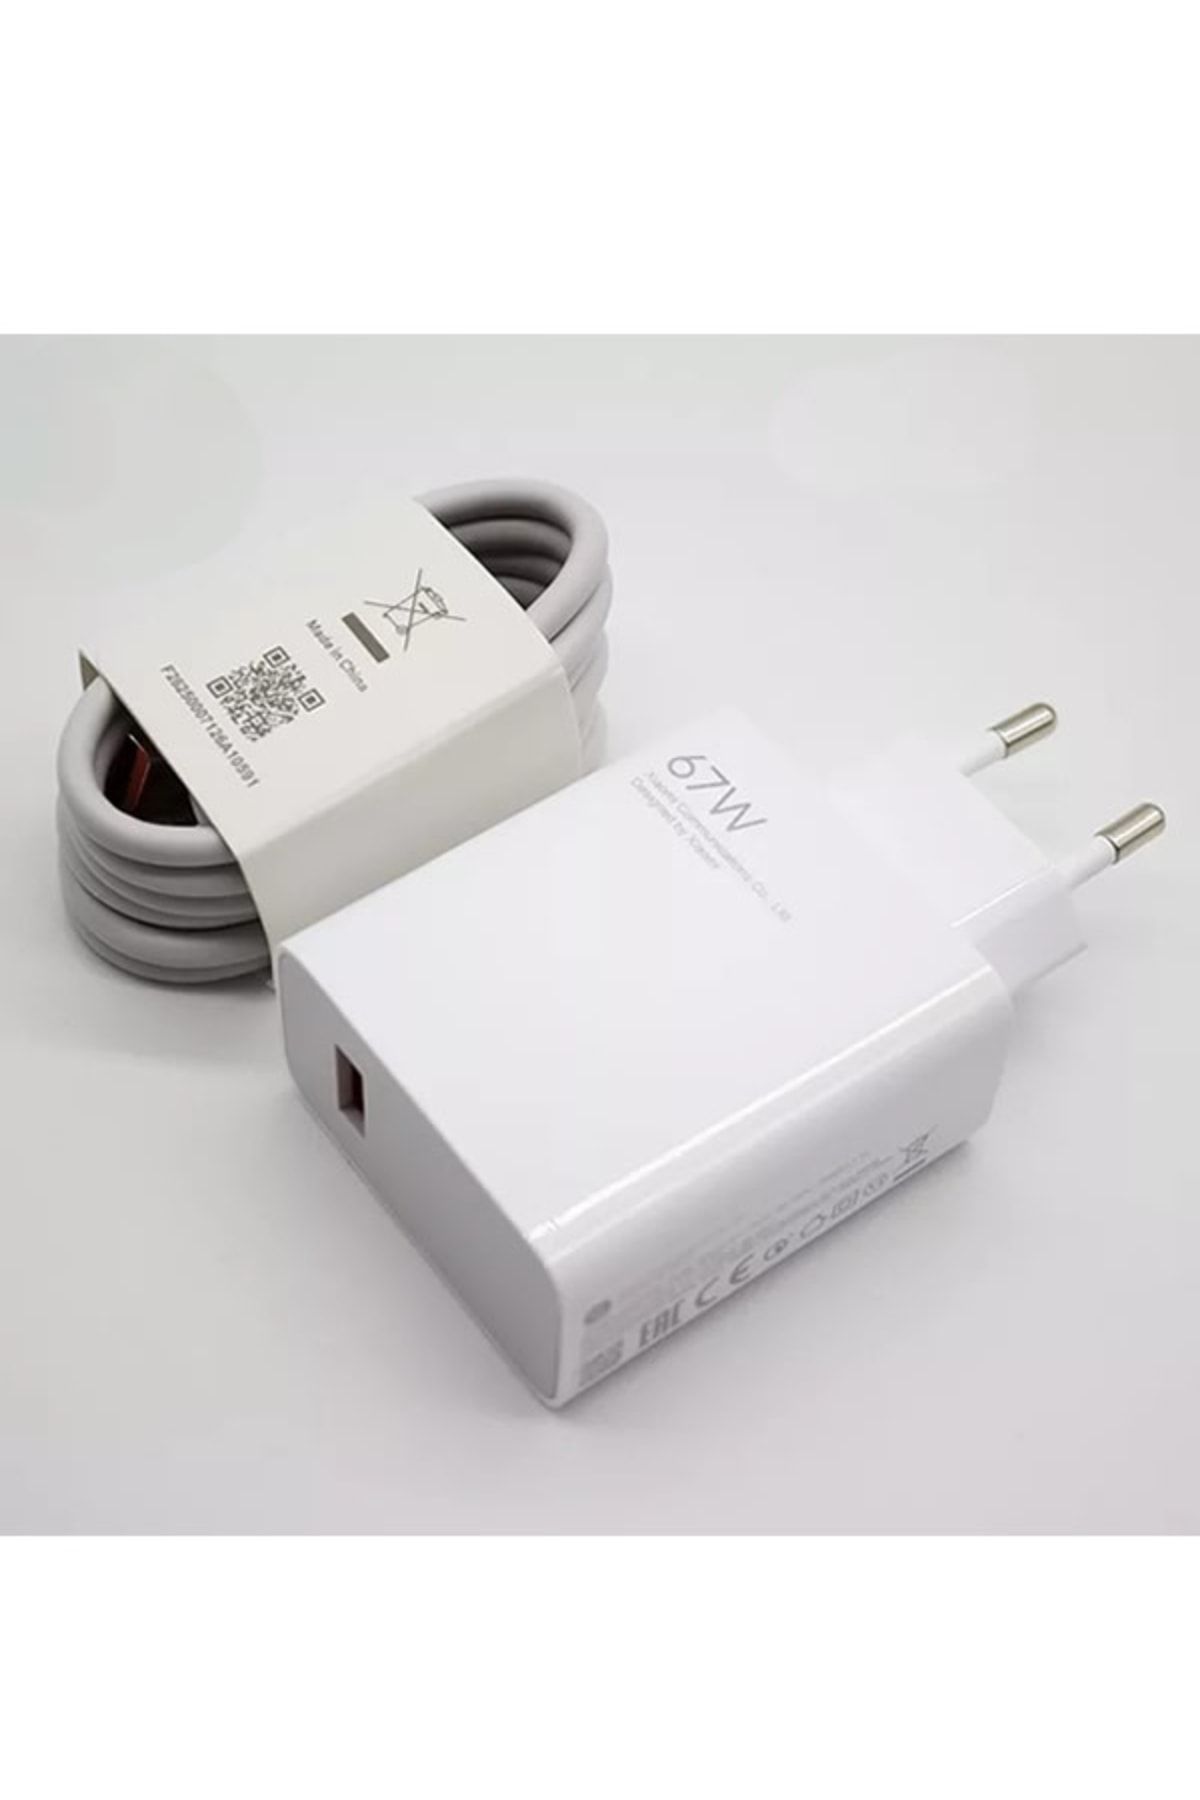 Xiaomi Poco X3 Gt 67w Süper Hızlı Şarj Aleti Orijinal Adaptör + Kablo Set ( Ithalatçı Garantili ) Mdy-12-eh